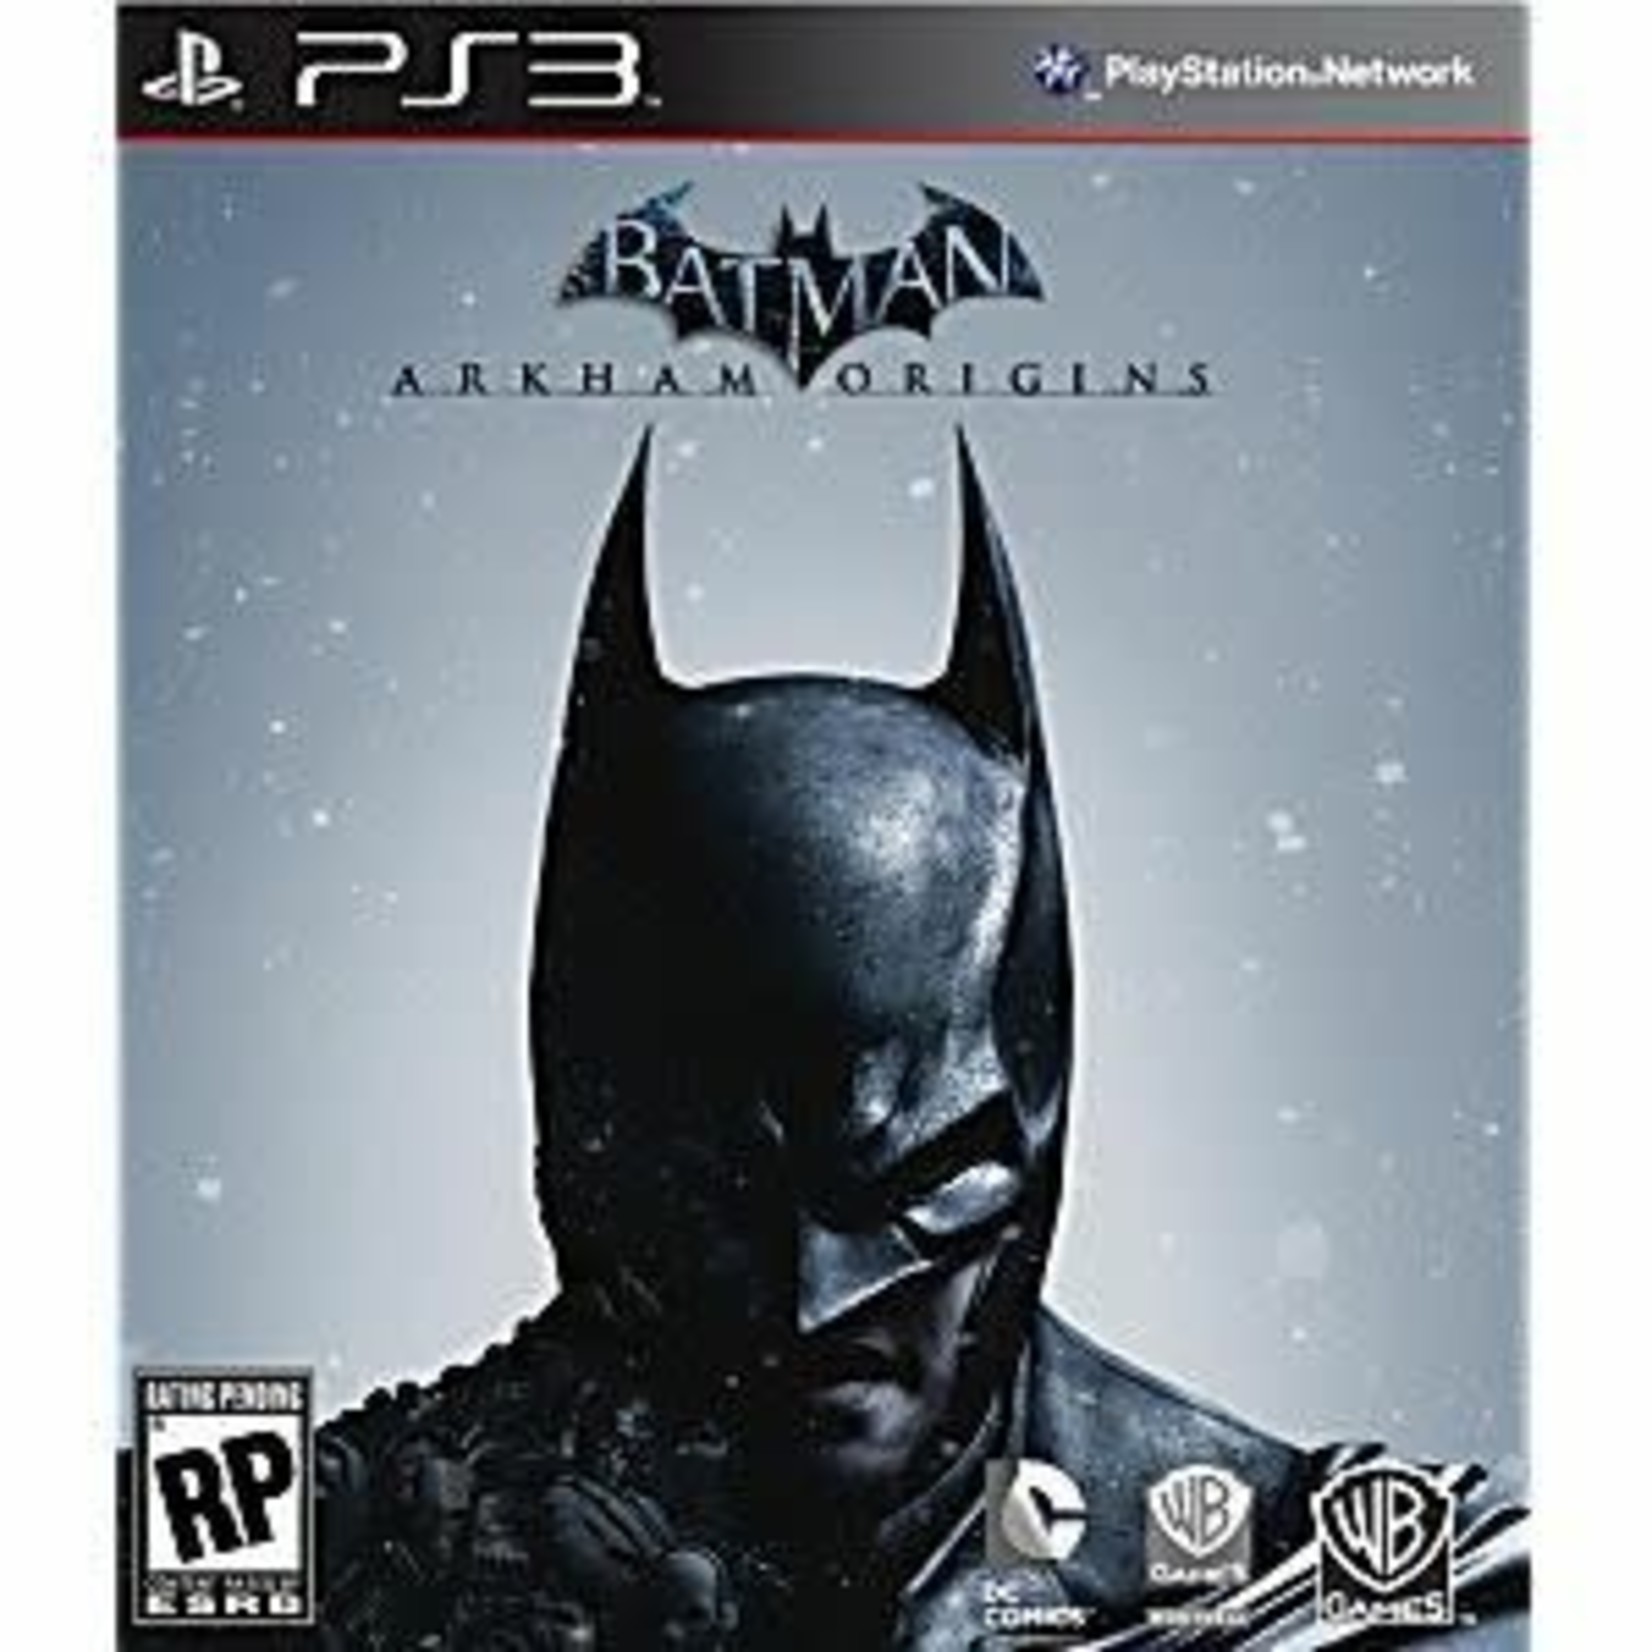 PS3U-BATMAN: ARKHAM ORIGINS